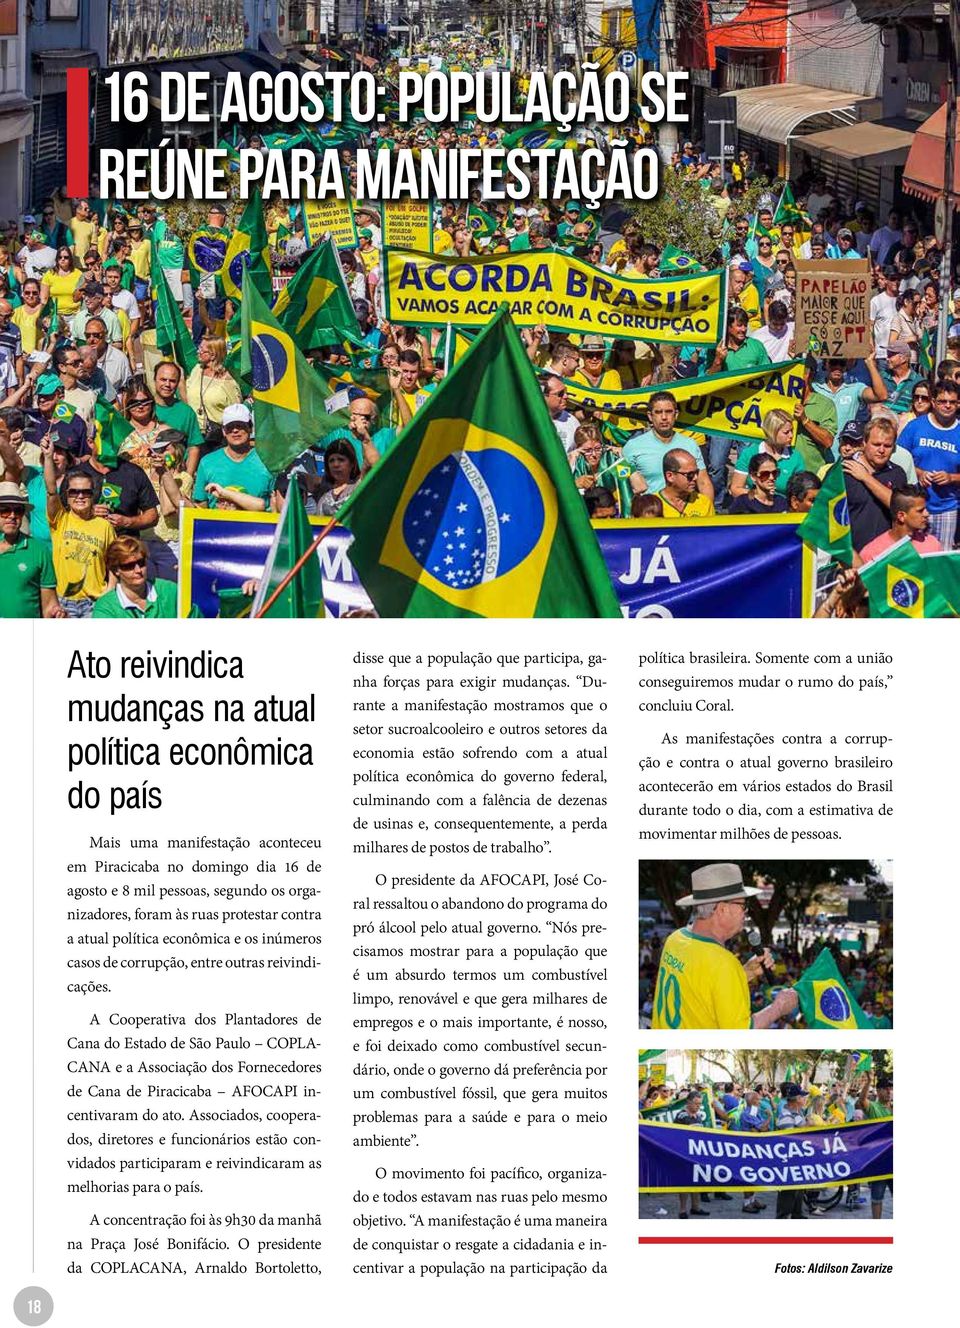 A Cooperativa dos Plantadores de Cana do Estado de São Paulo COPLA- CANA e a Associação dos Fornecedores de Cana de Piracicaba AFOCAPI incentivaram do ato.